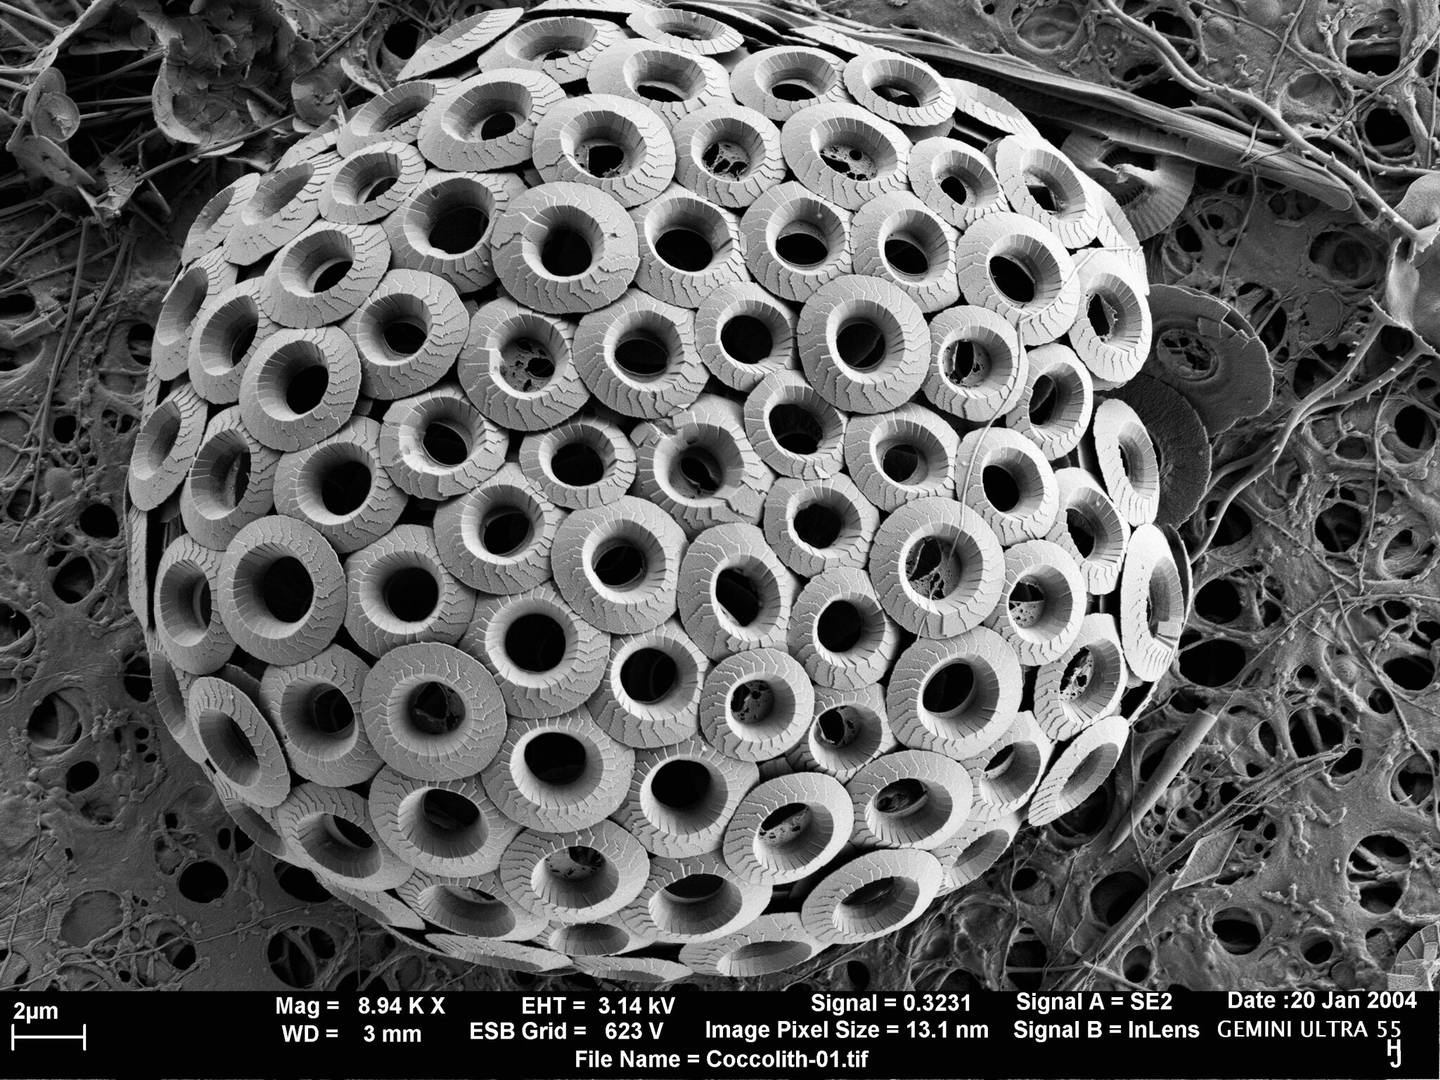 Конгломерация Umbilicosphaera sibogae (кокколитофора), полученная с помощью растрового электронного микроскопа ZEISS MERLIN